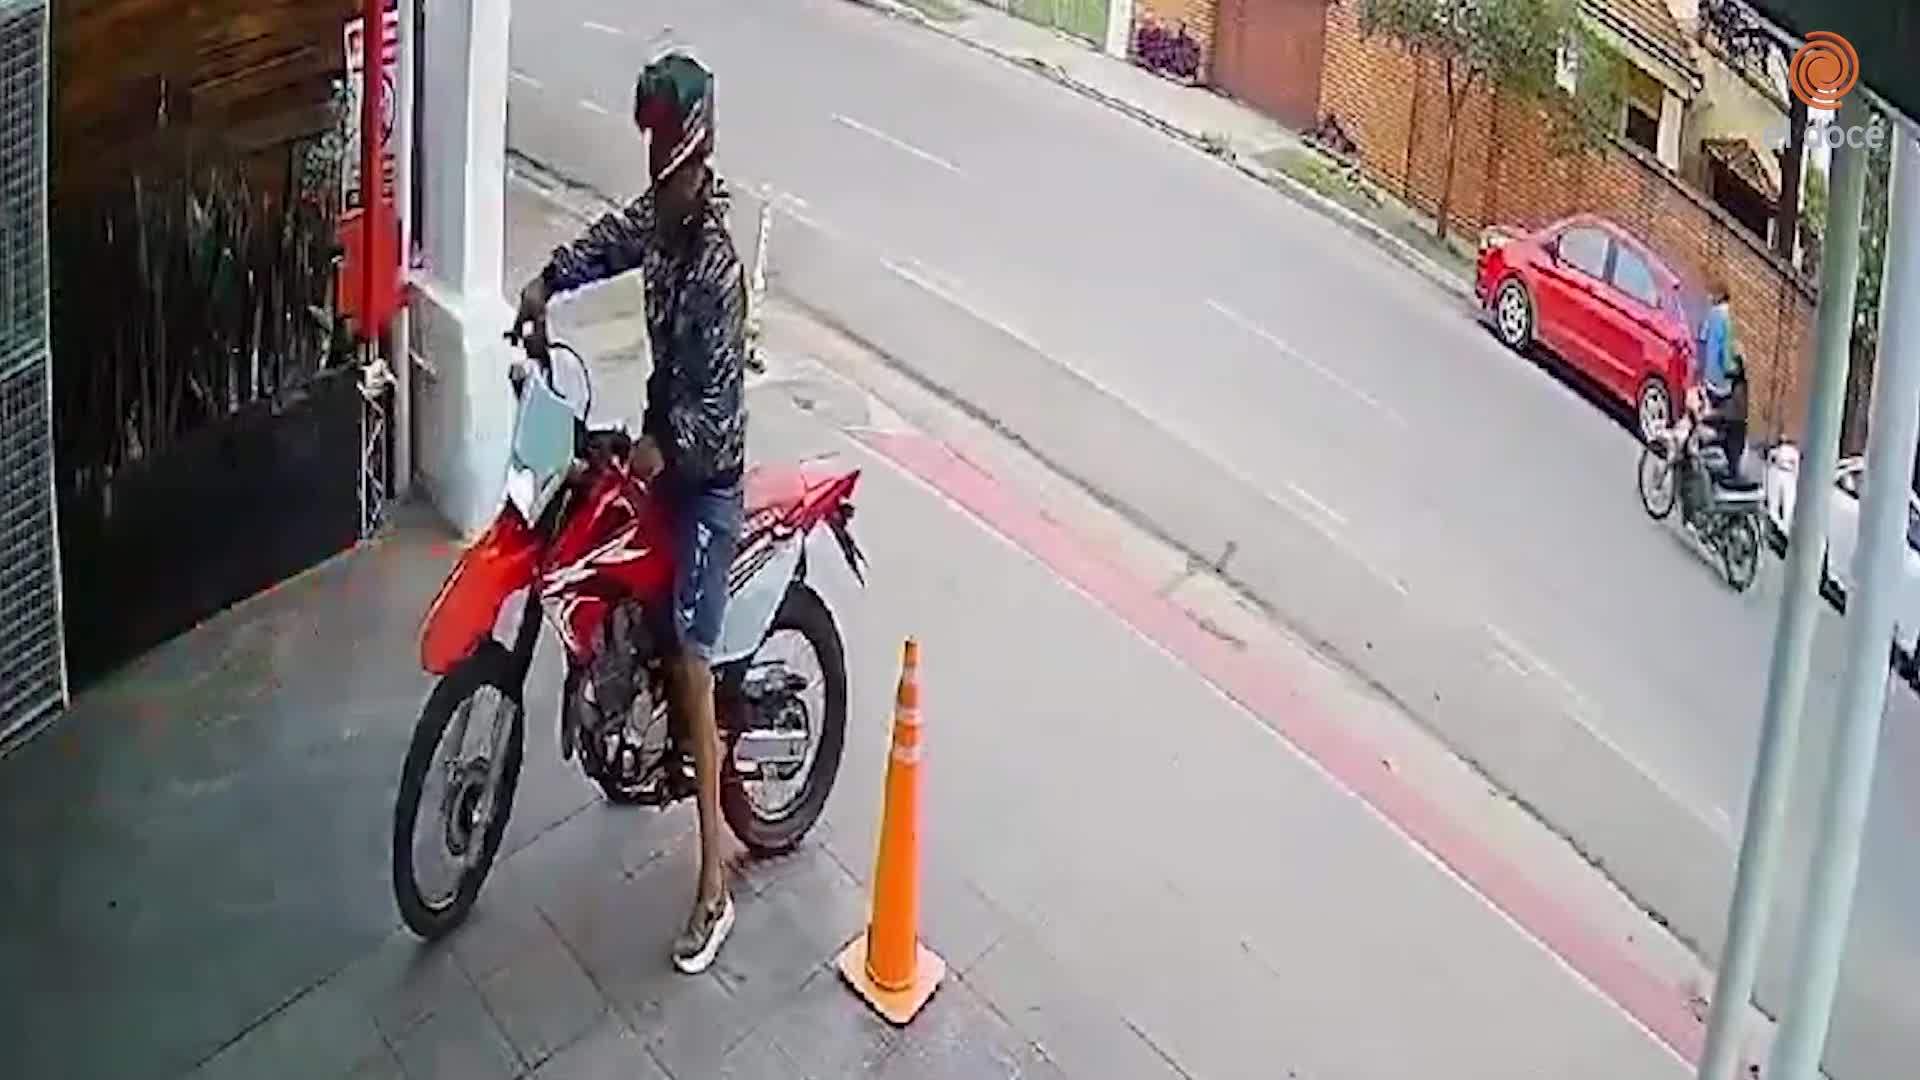 Le robaron la moto a punta de pistola